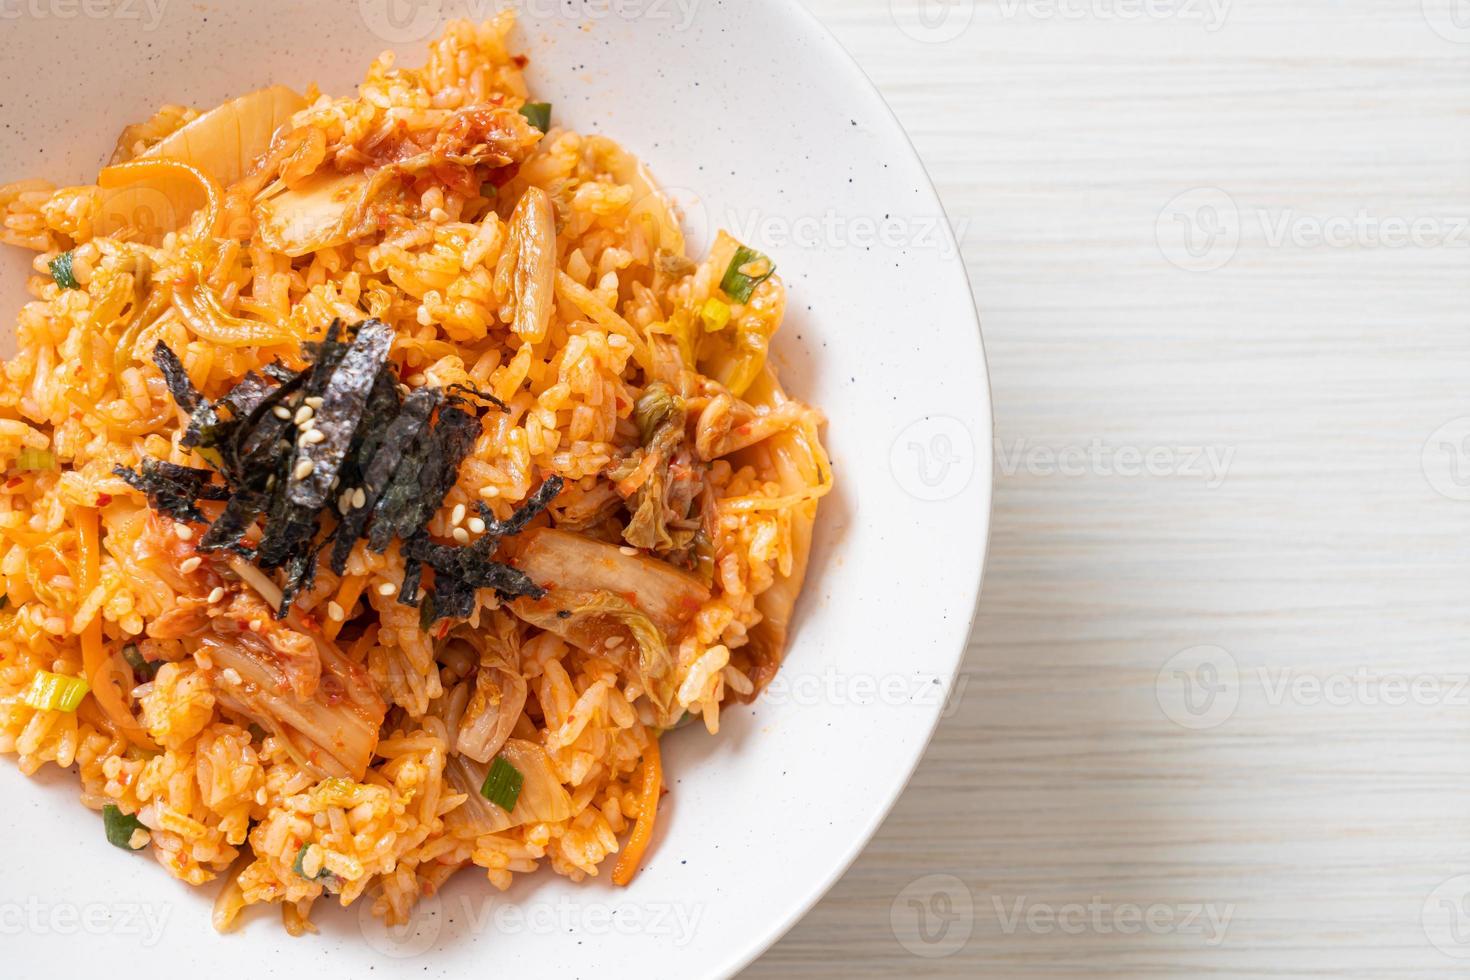 riso fritto al kimchi con alghe e sesamo bianco - stile coreano foto